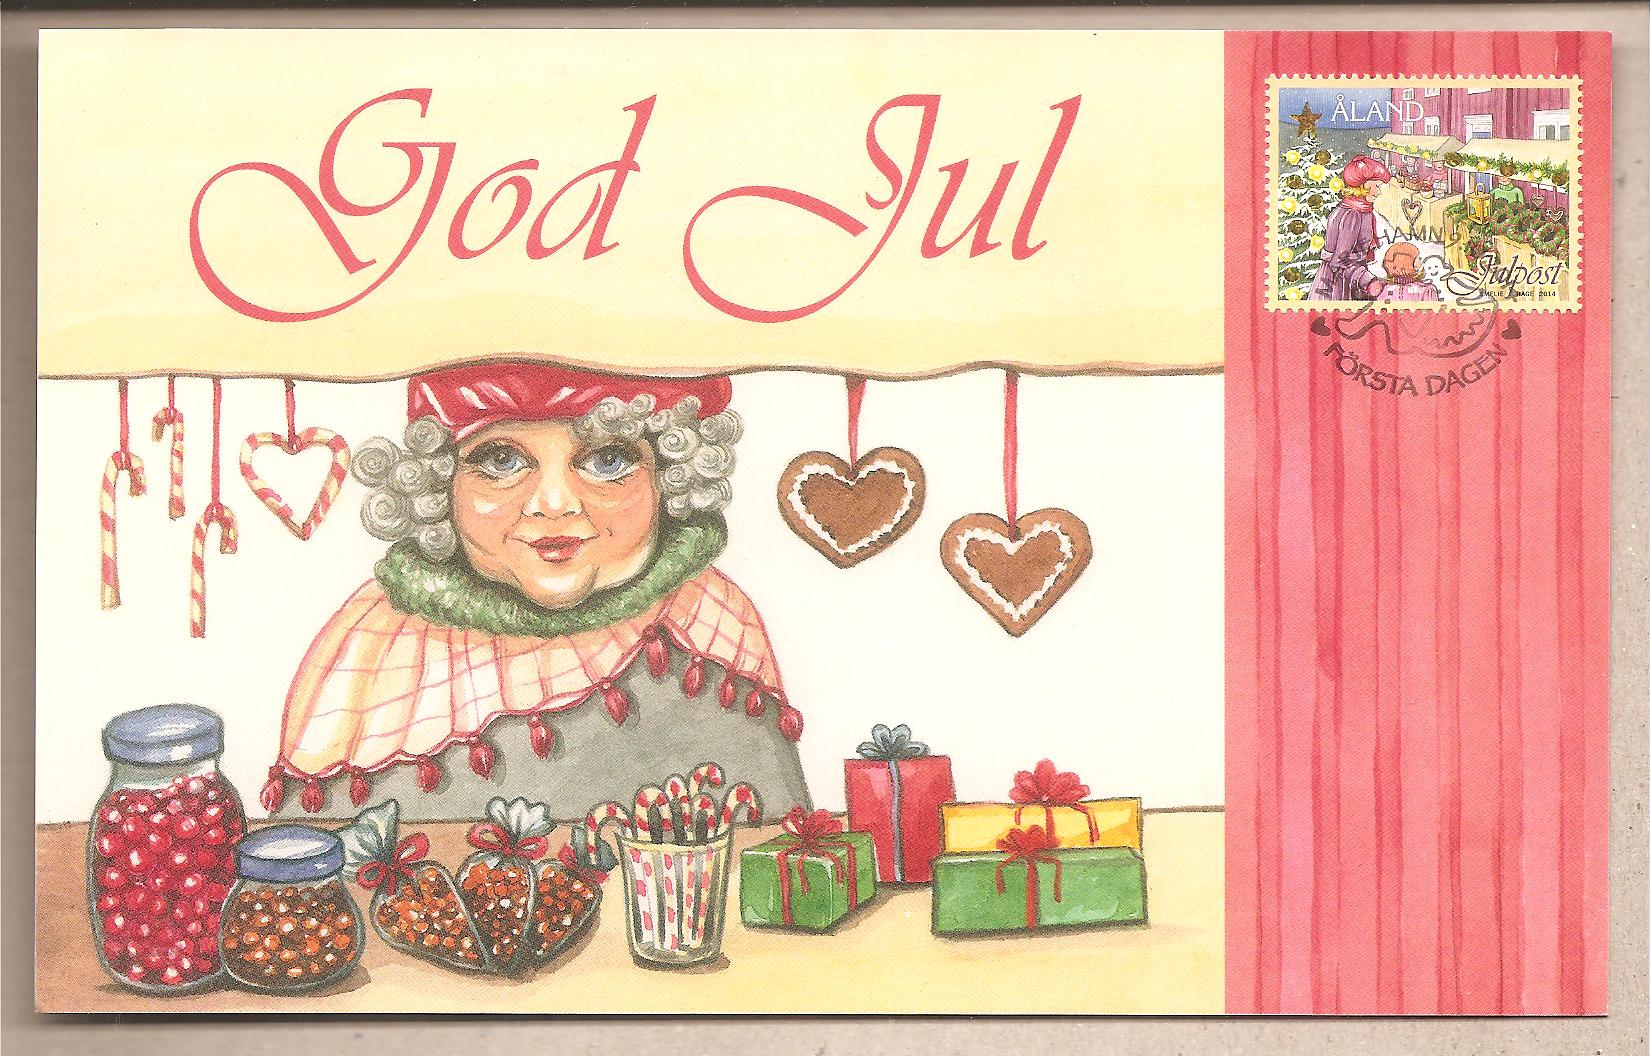 41817 - Aland - cartolina con annullo speciale: Buon Natale - 2014